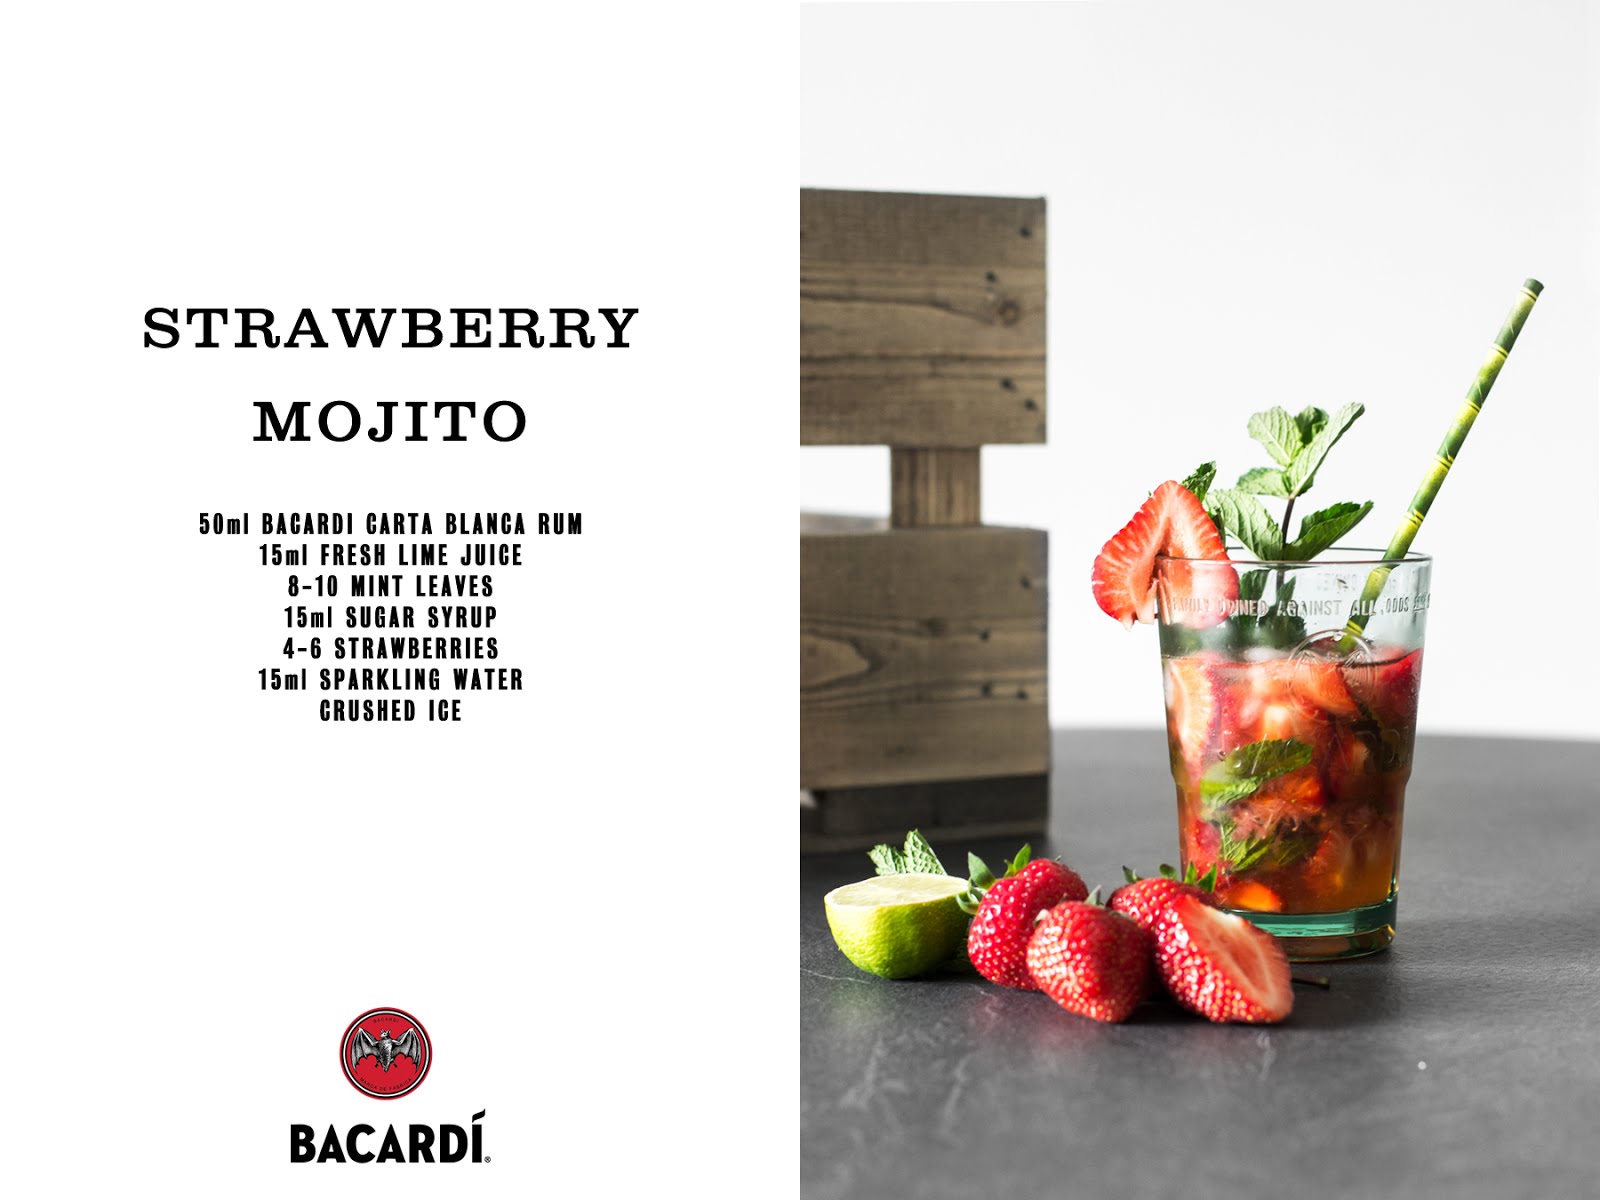 The original bacardi mojito, recipe, strawberry mojito, mojito royale, prosecco, fruit, cocktails, summer cocktails, homemade, diy